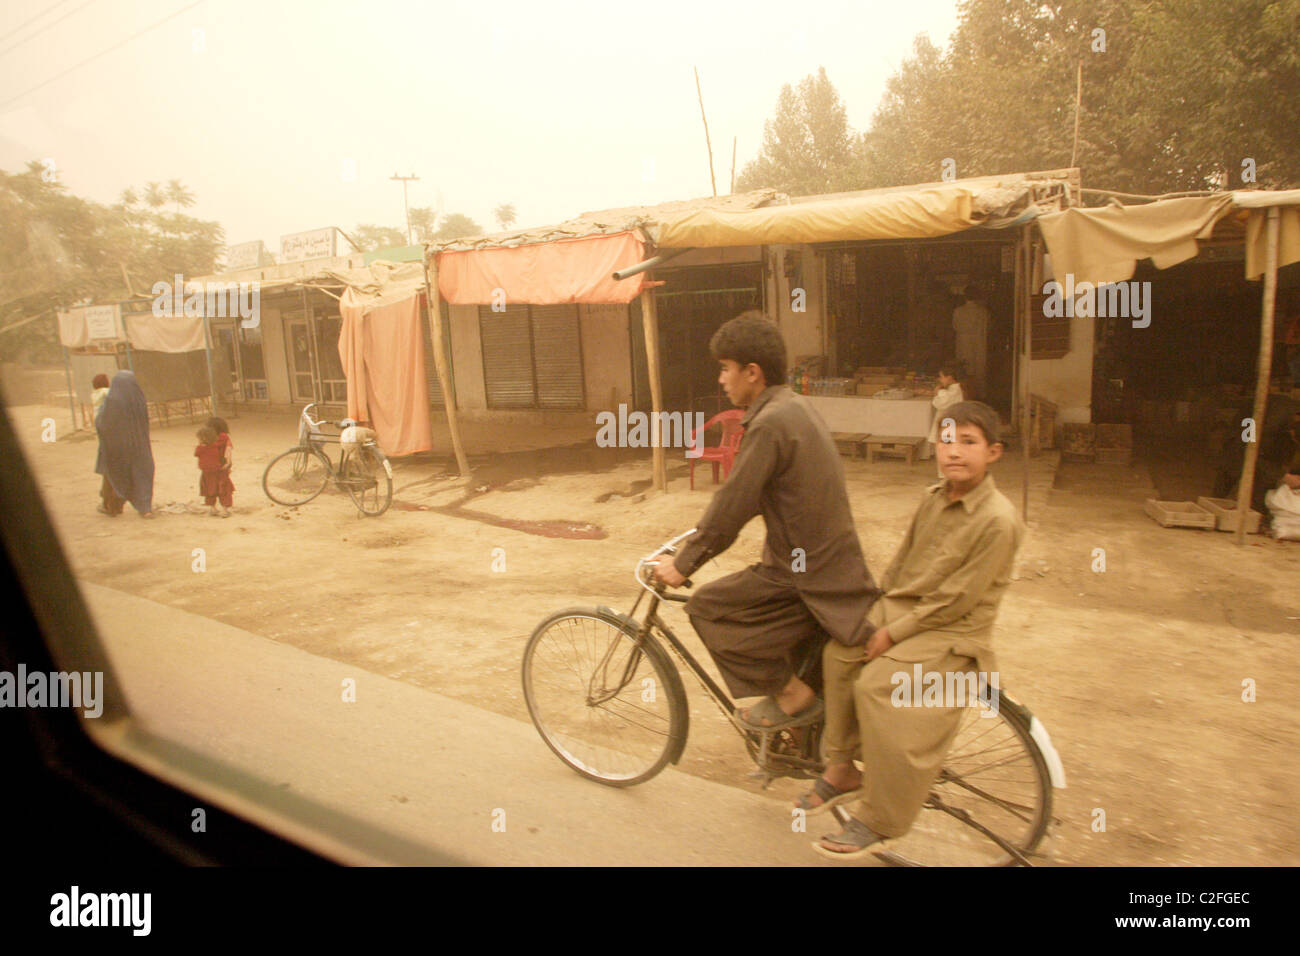 Les jeunes Afghans sur un vélo, Kunduz, Afghanistan Banque D'Images